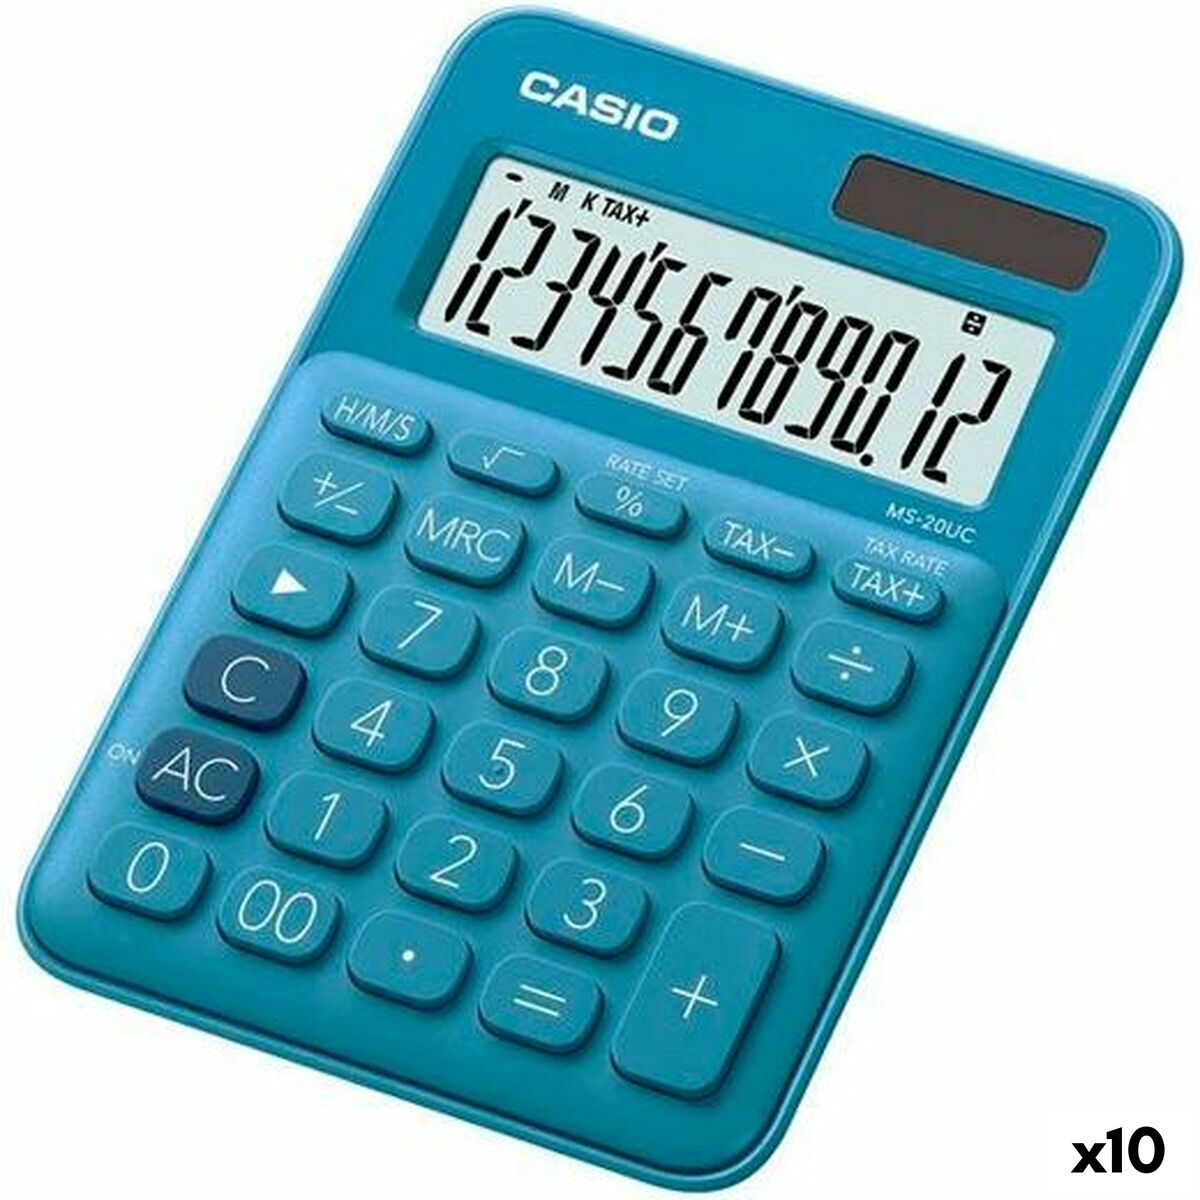 Calculator Casio MS-20UC 2,3 x 10,5 x 14,95 cm Blue (10Units)